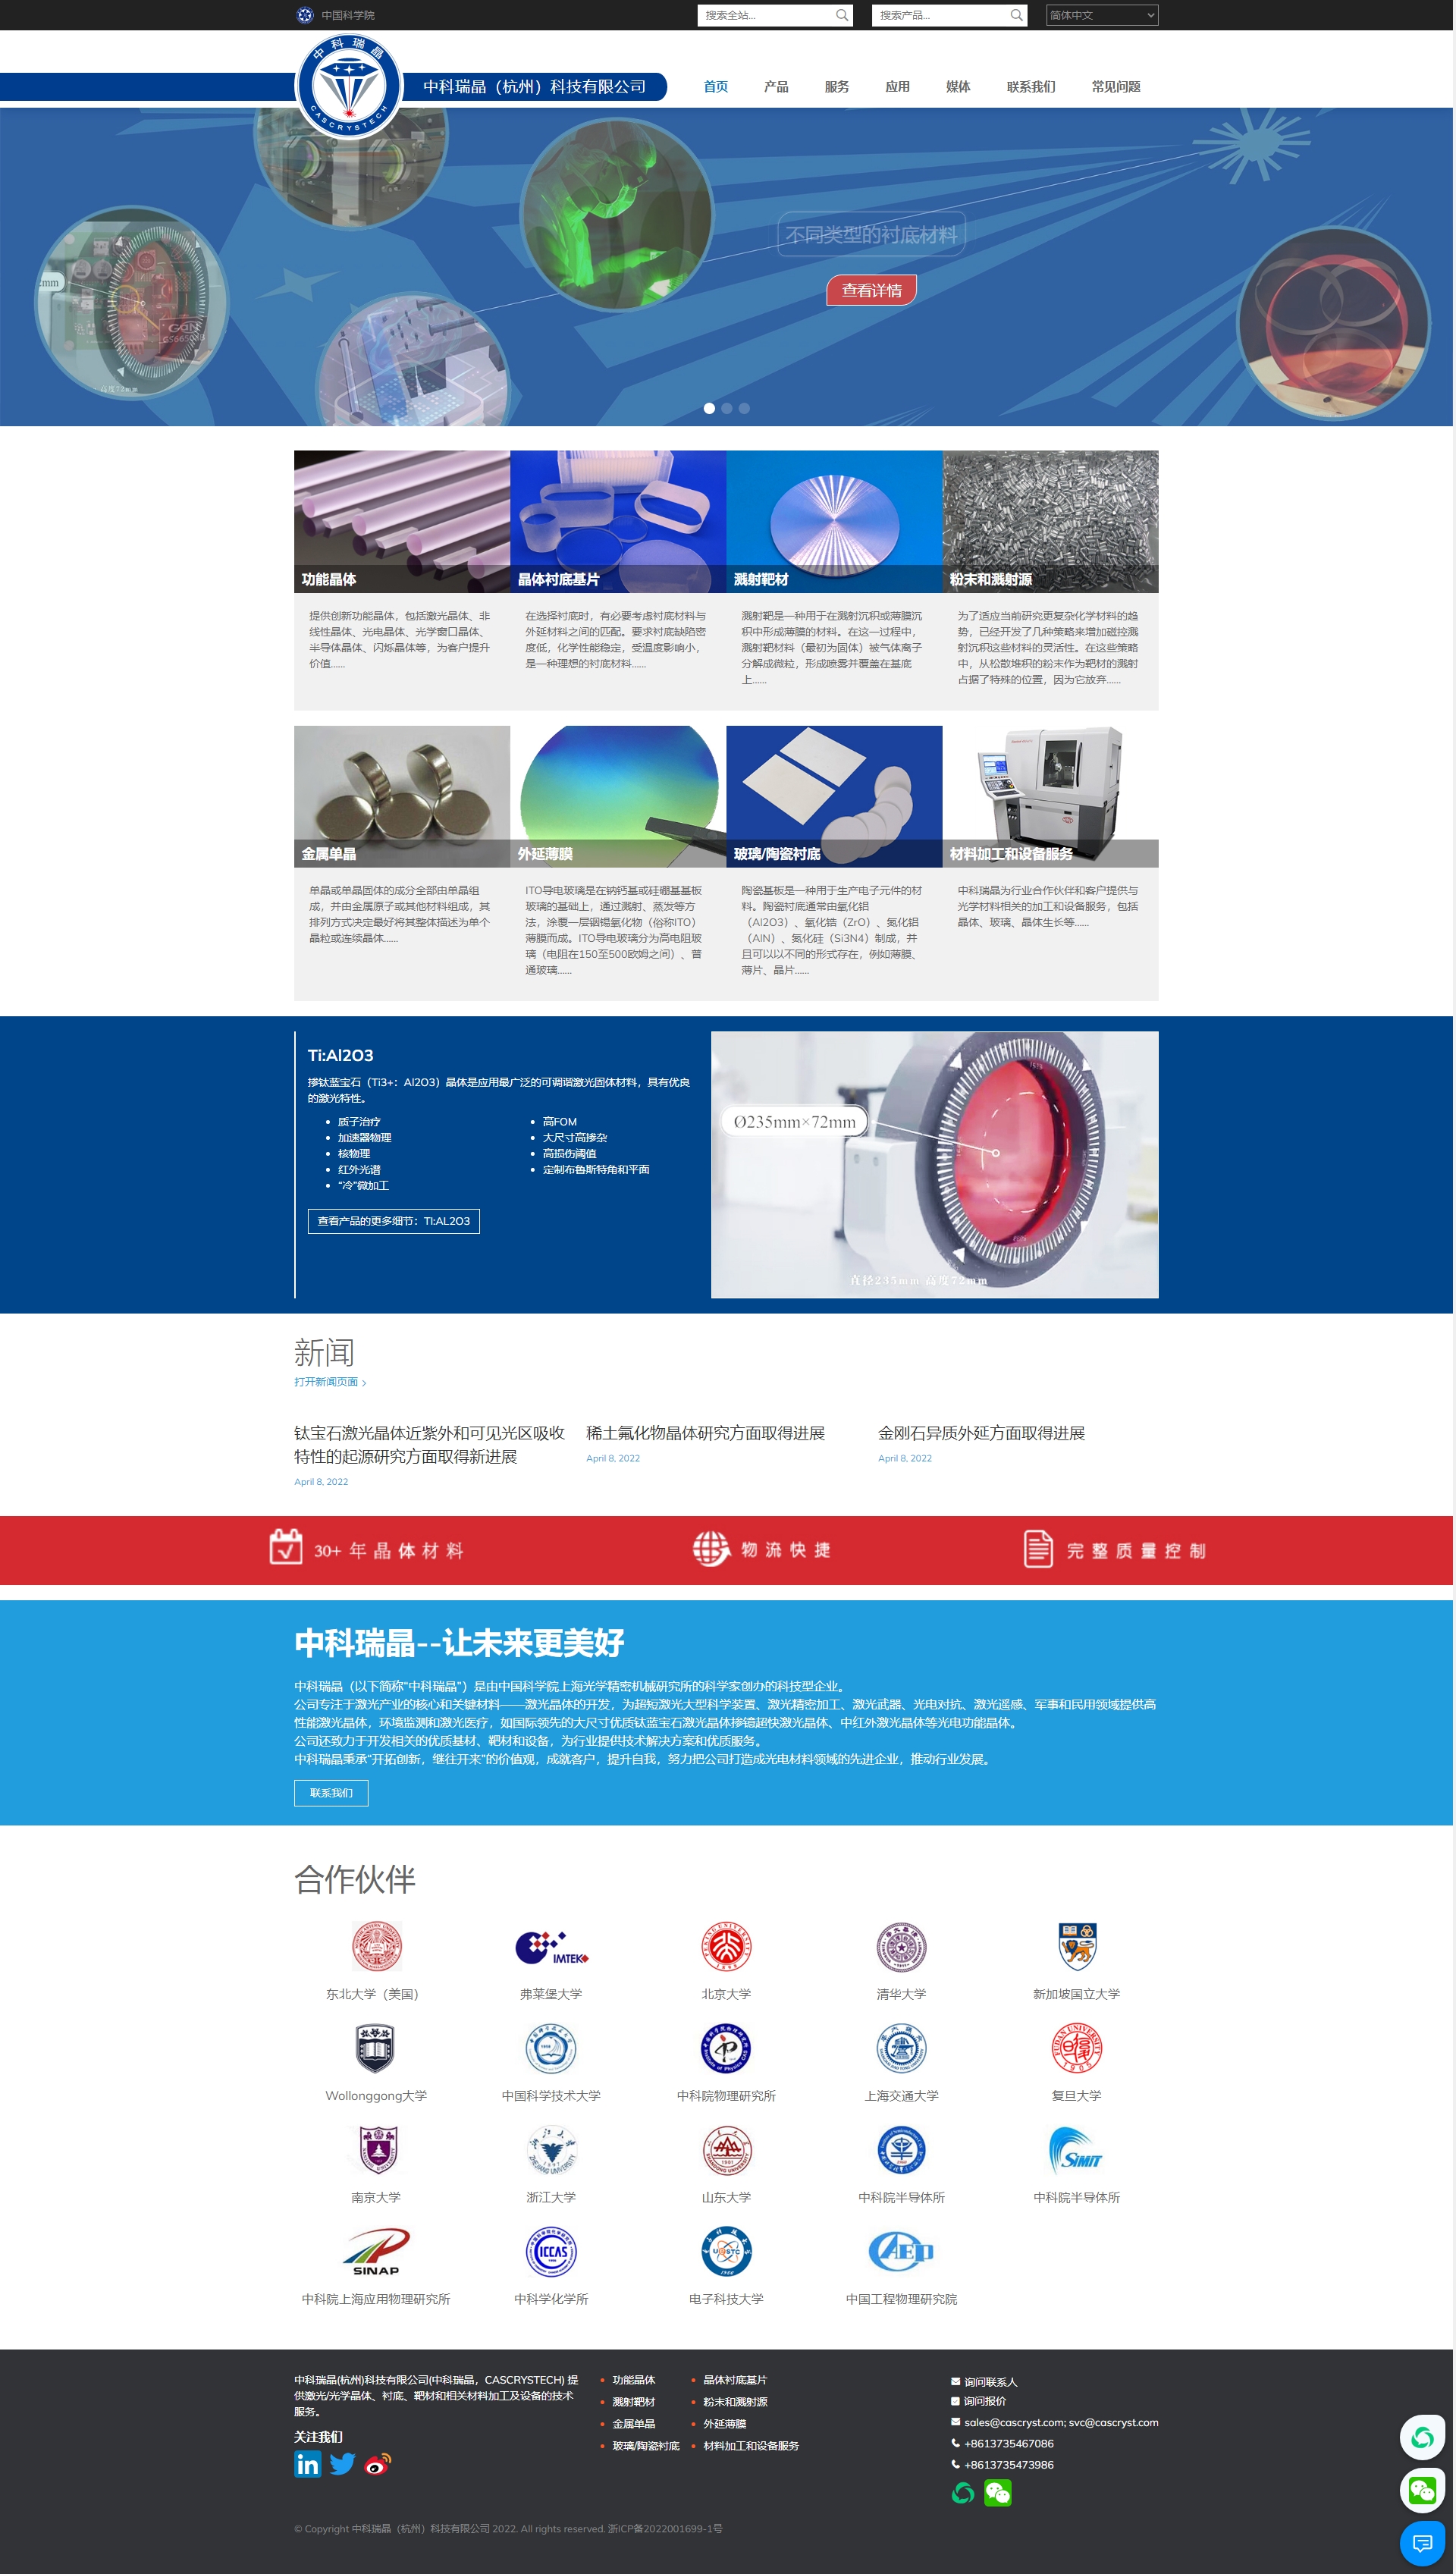 中科瑞晶（杭州）科技有限公司，CASCRYSTECH，CCT.jpg